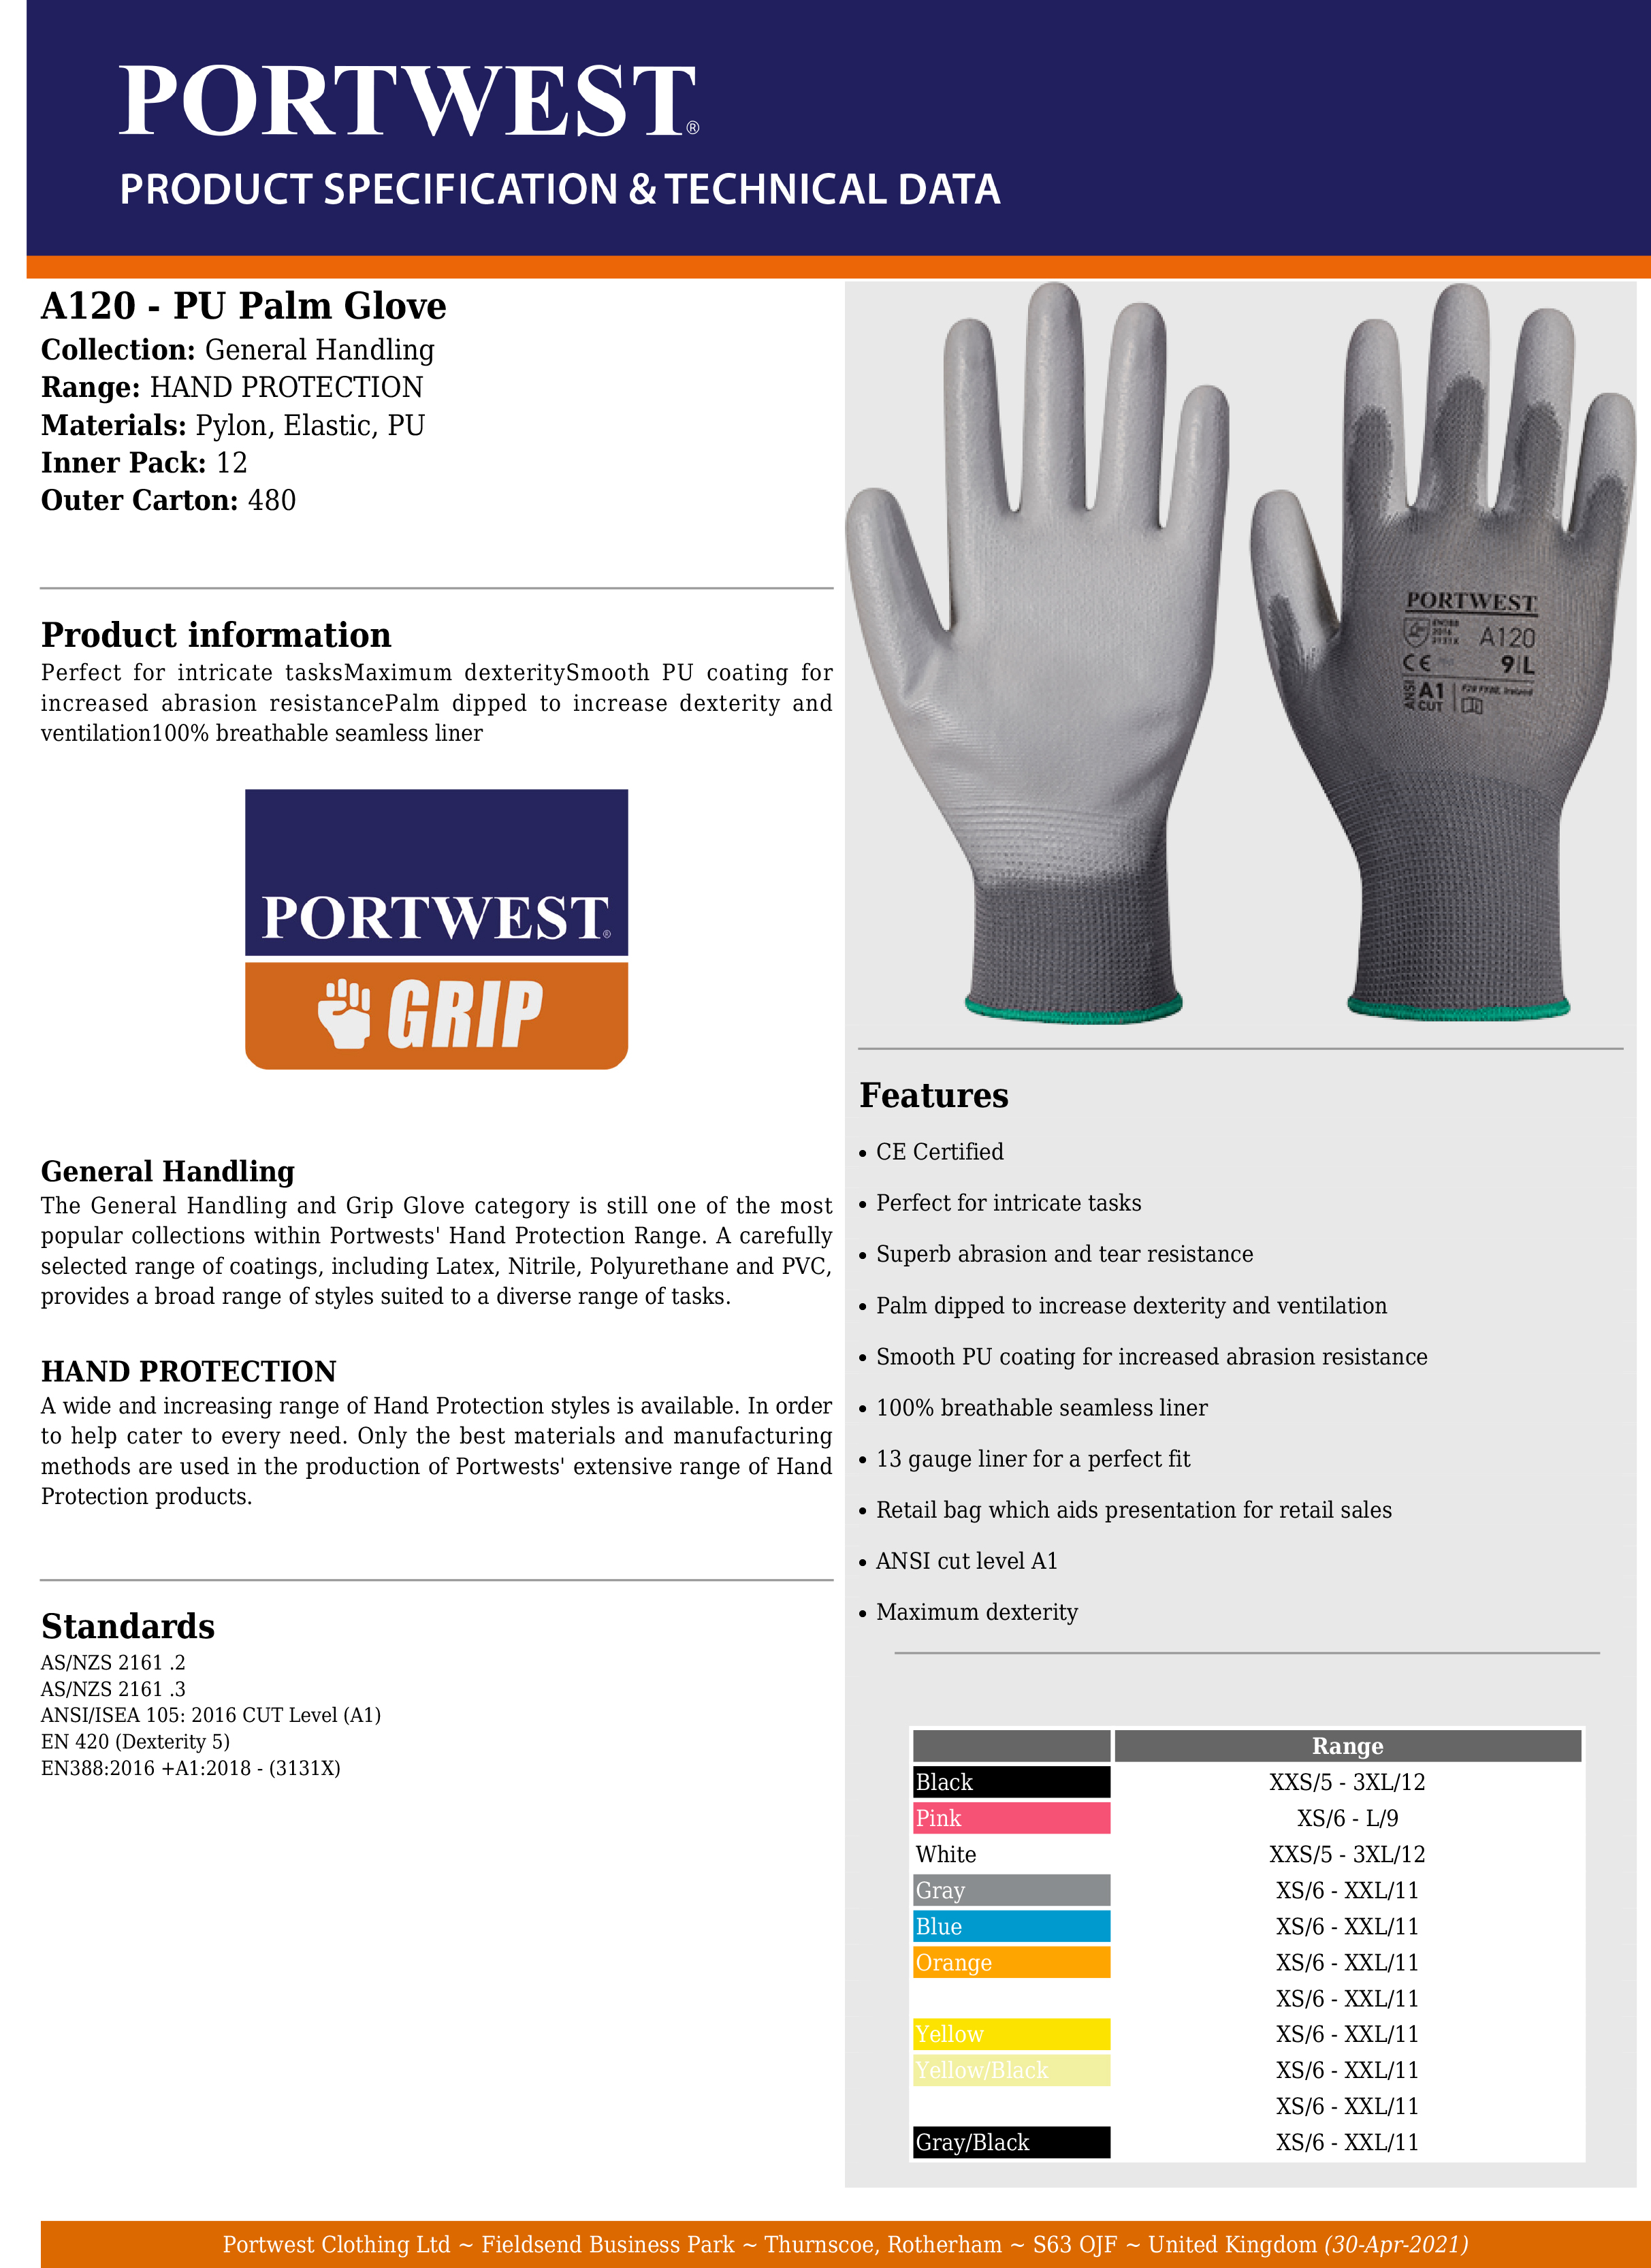 PORTWEST A120 PU Coated General Purpose Work Glove GREY Size XS 2XL 